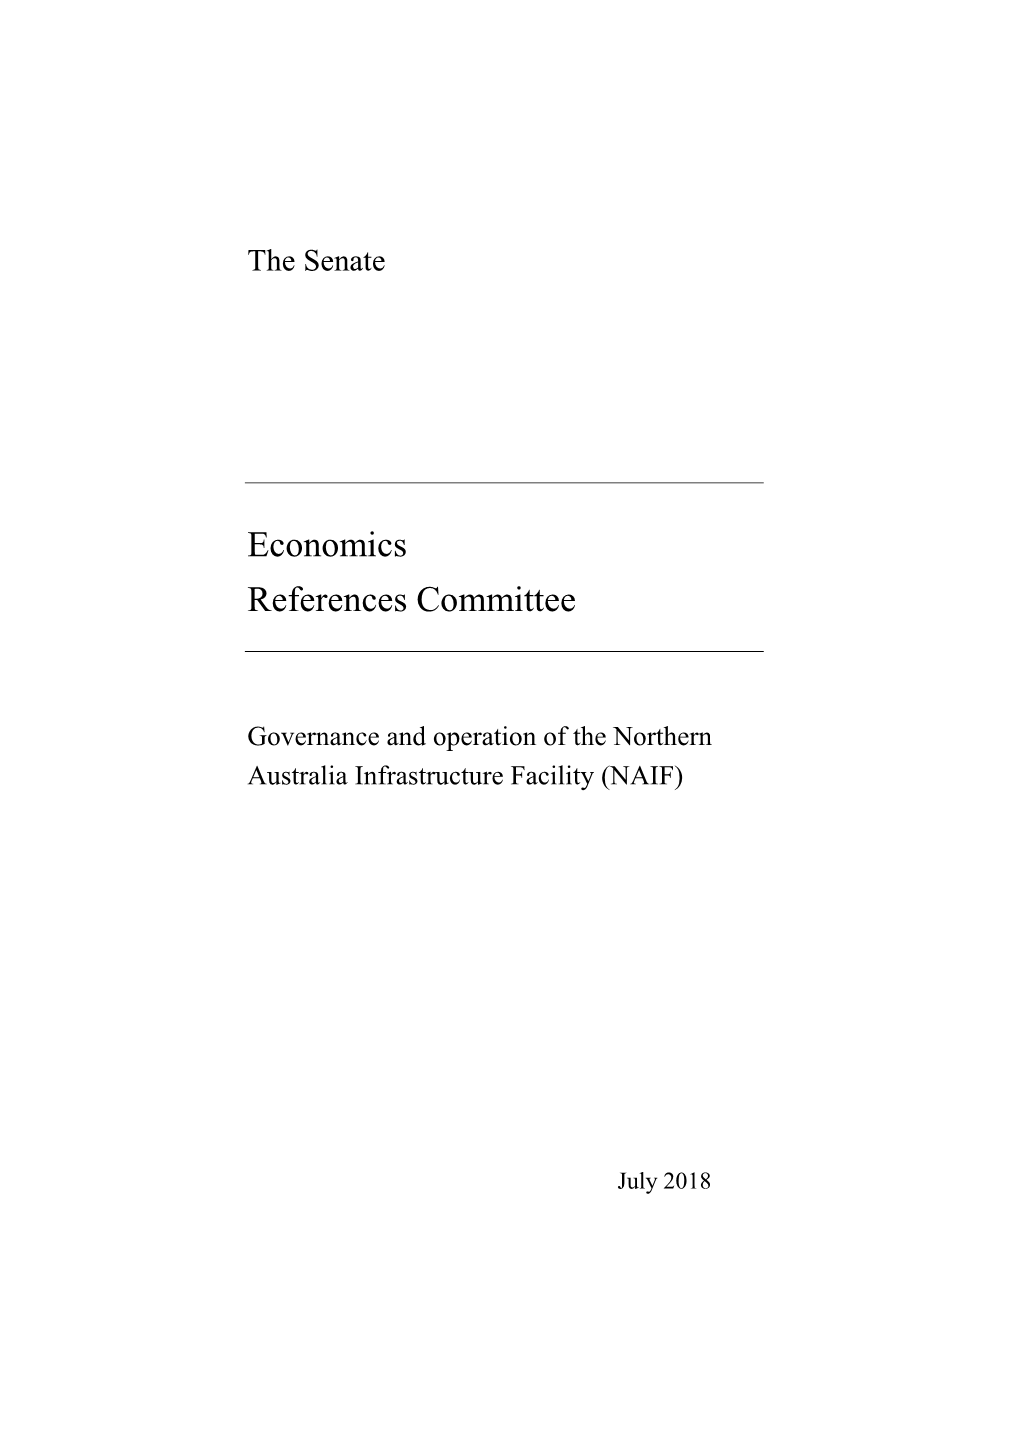 Economics References Committee